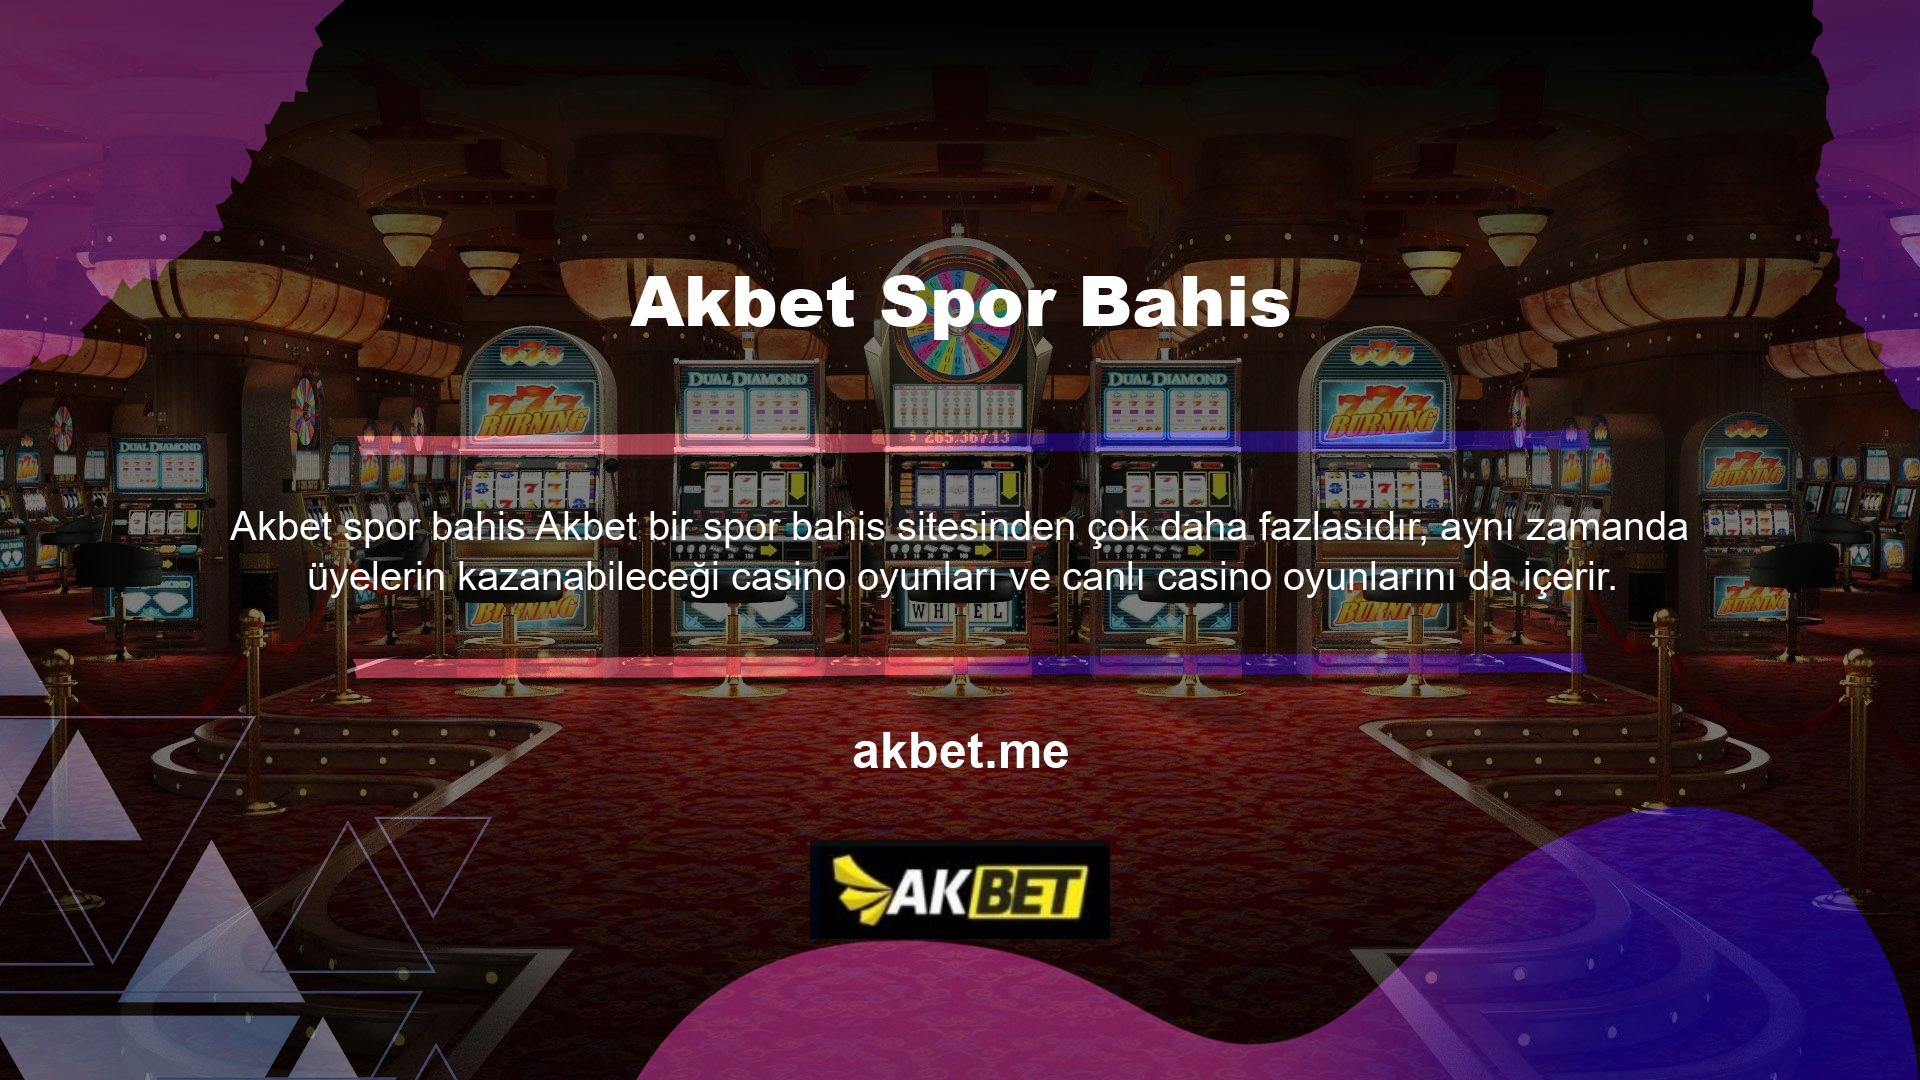 Siteye giriş yaptığınızda ekranın üst kısmında yer alan ilk bölümde binlerce farklı seçenek bulunmaktadır: Canlı Casino Oyunları